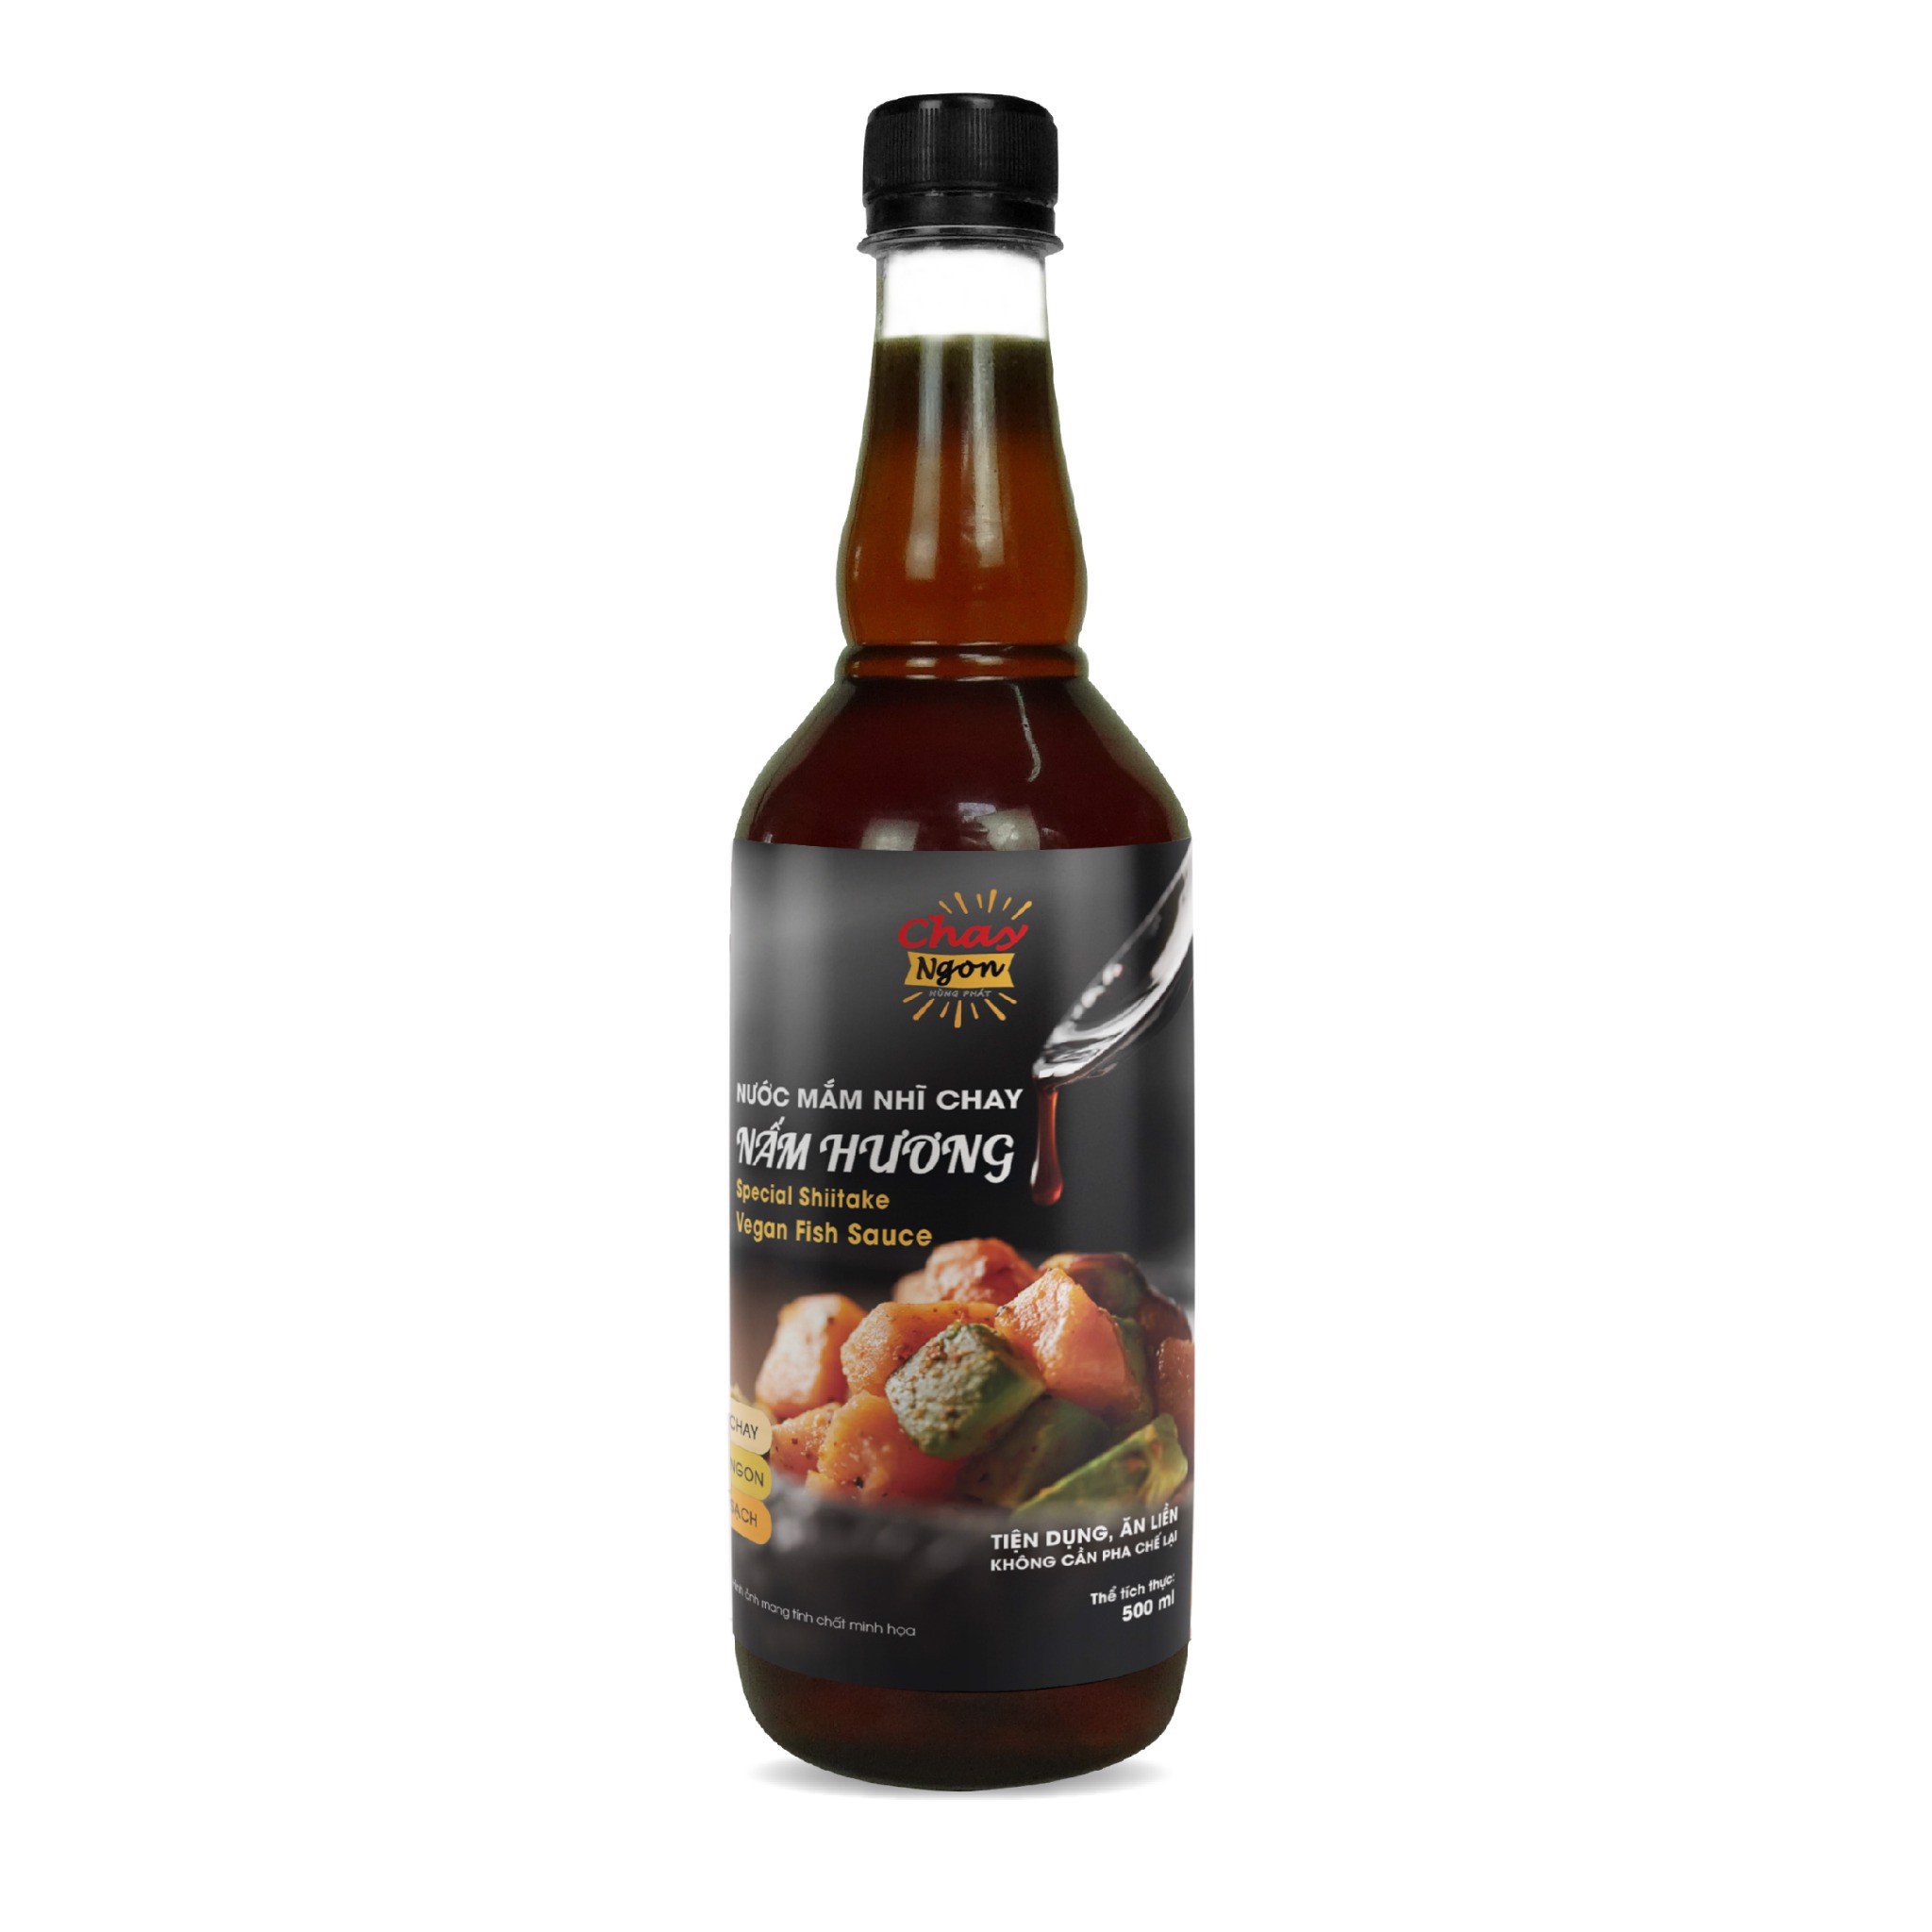 Nước Mắm Nhĩ Chay Nấm Hương vị đậm đà 500ml  - Special Shiitake Vegan Fish Sauce